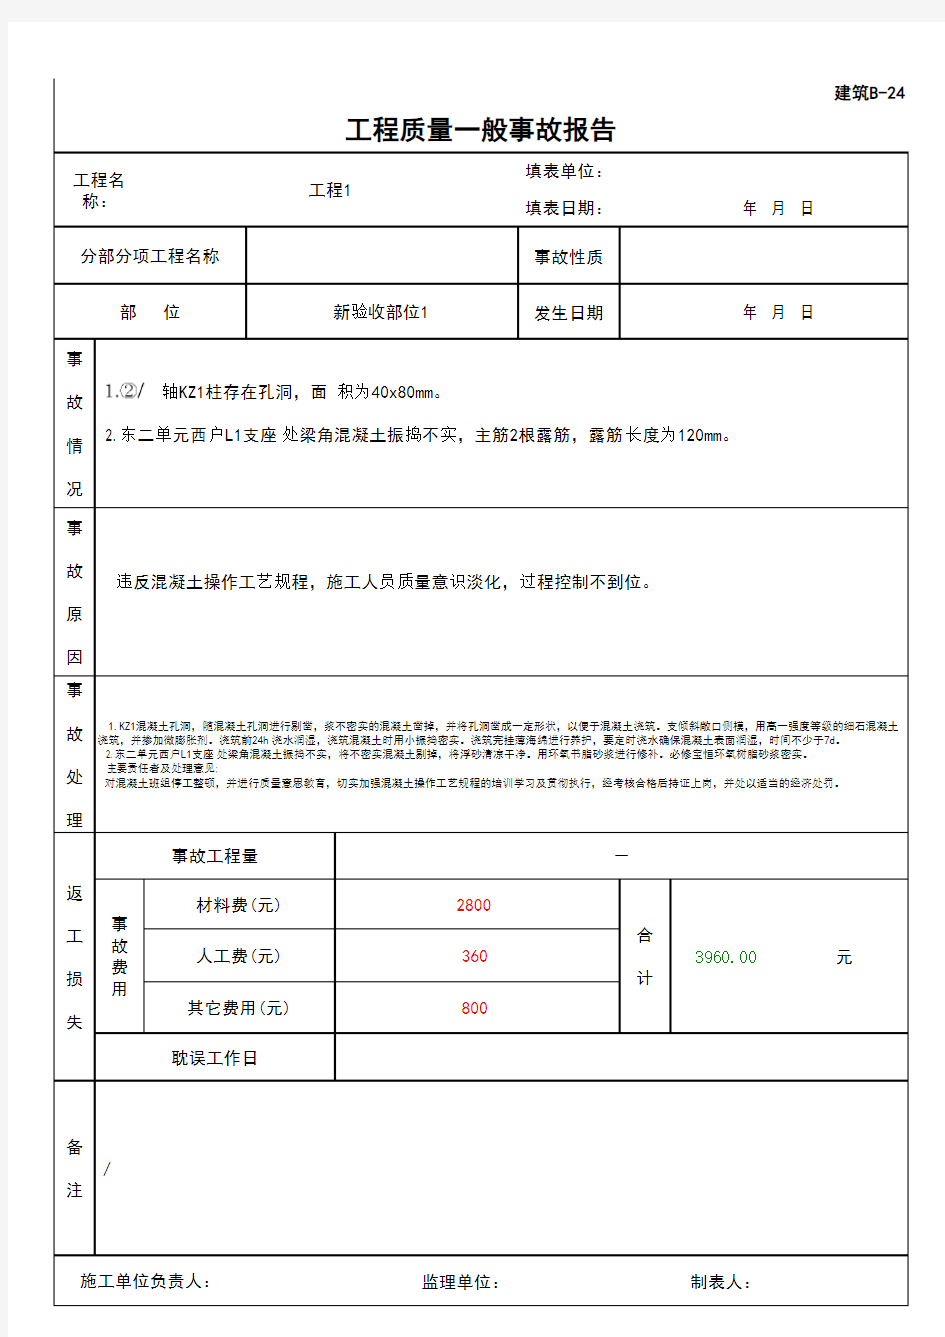 (上海市新版)工程质量一般事故报告